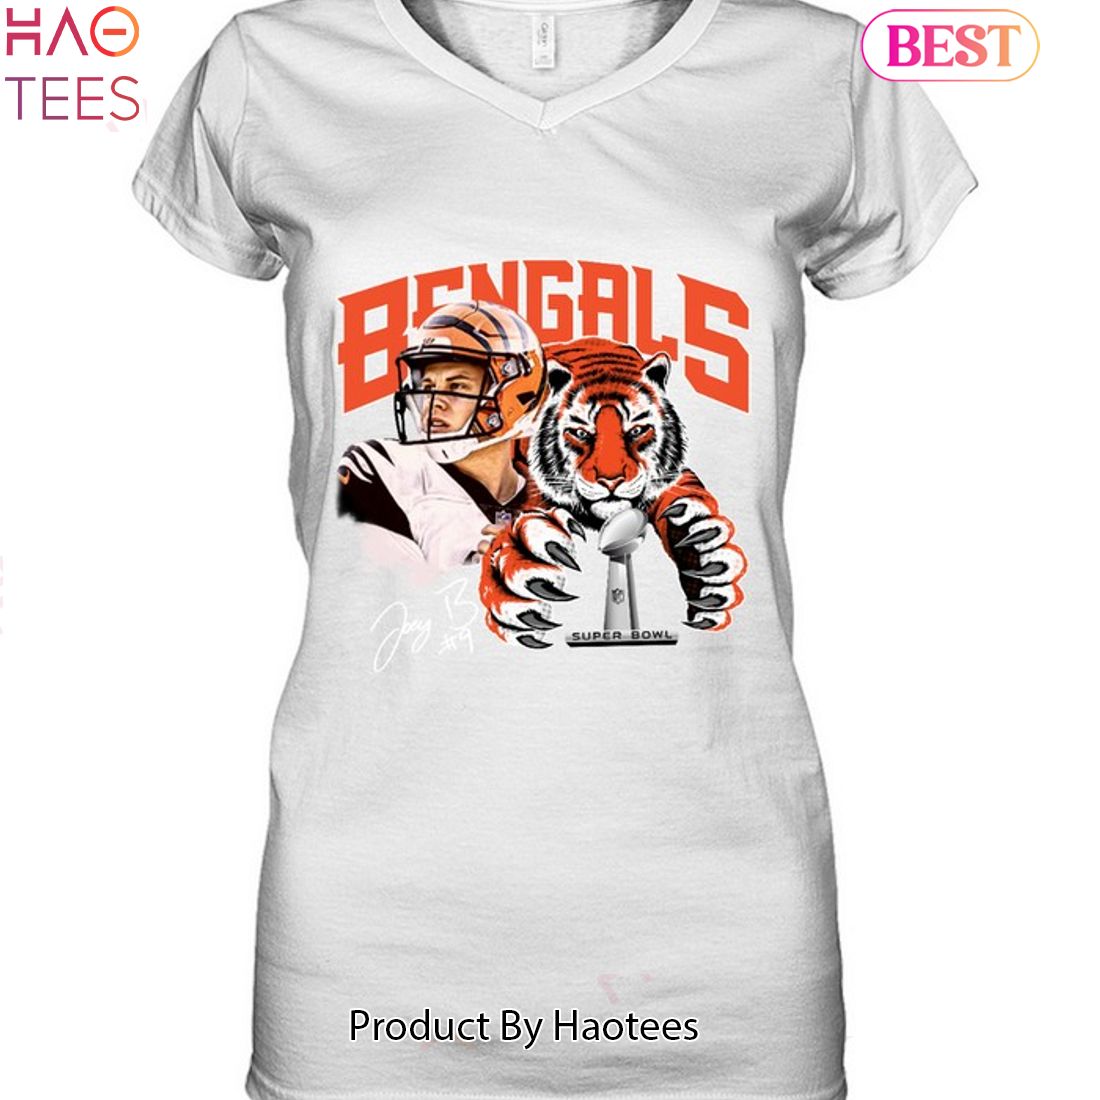 Bengals Super Bowl Champions T-Shirt - Trends Bedding